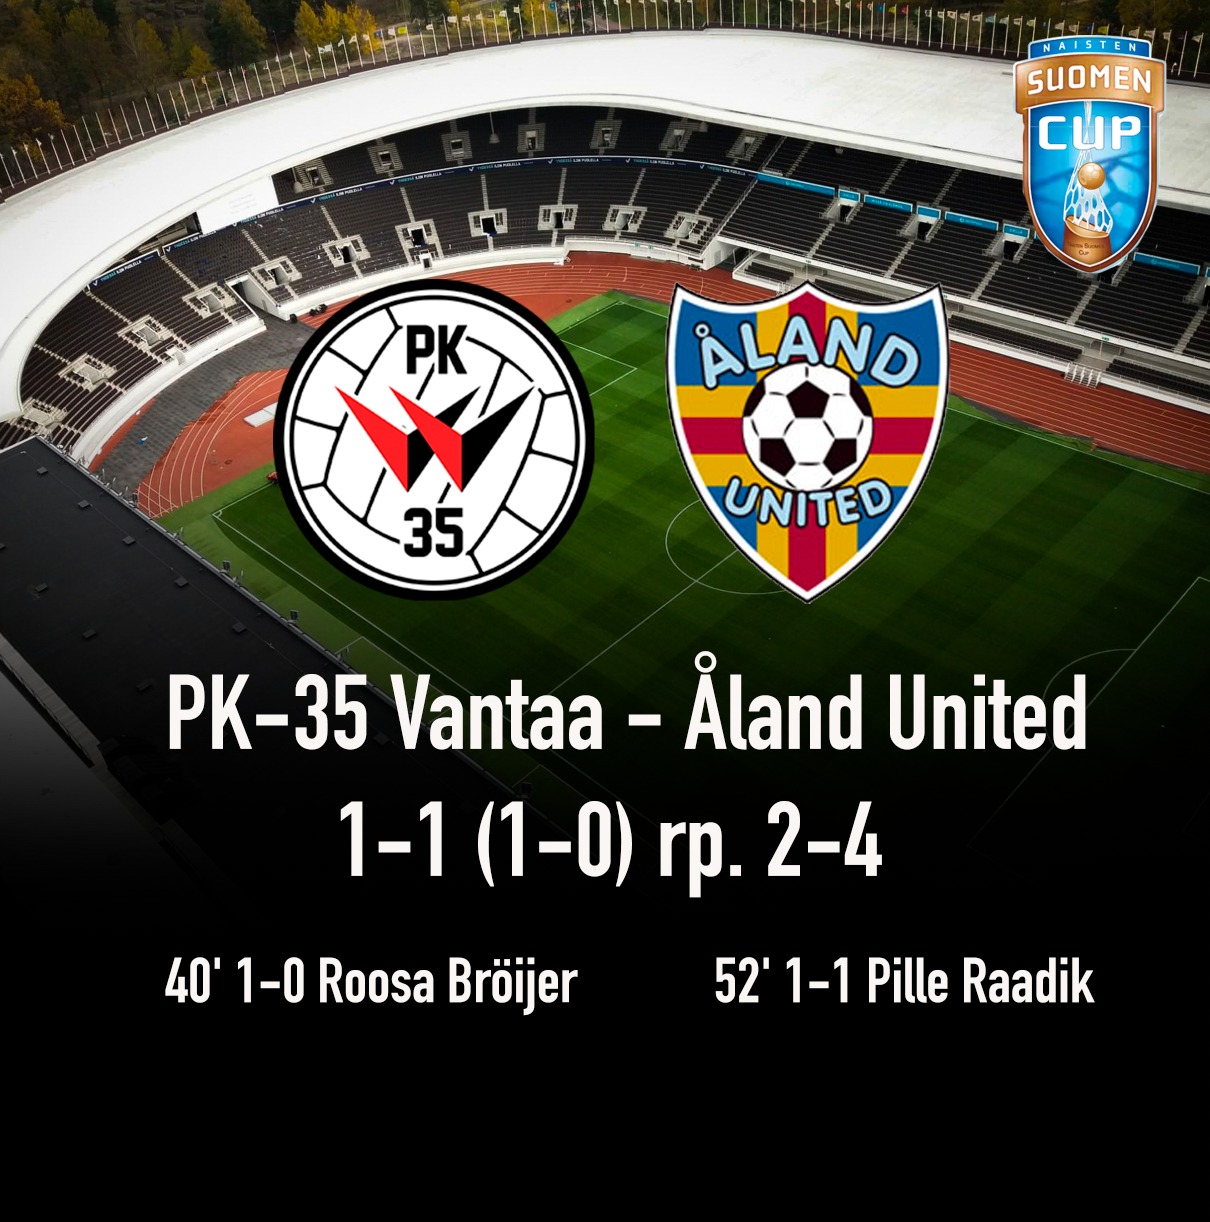 Ottelukooste: Suomen Cupin loppuottelu PK-35 Vantaa – Åland United 1-1 (1-0) rp. 2-4